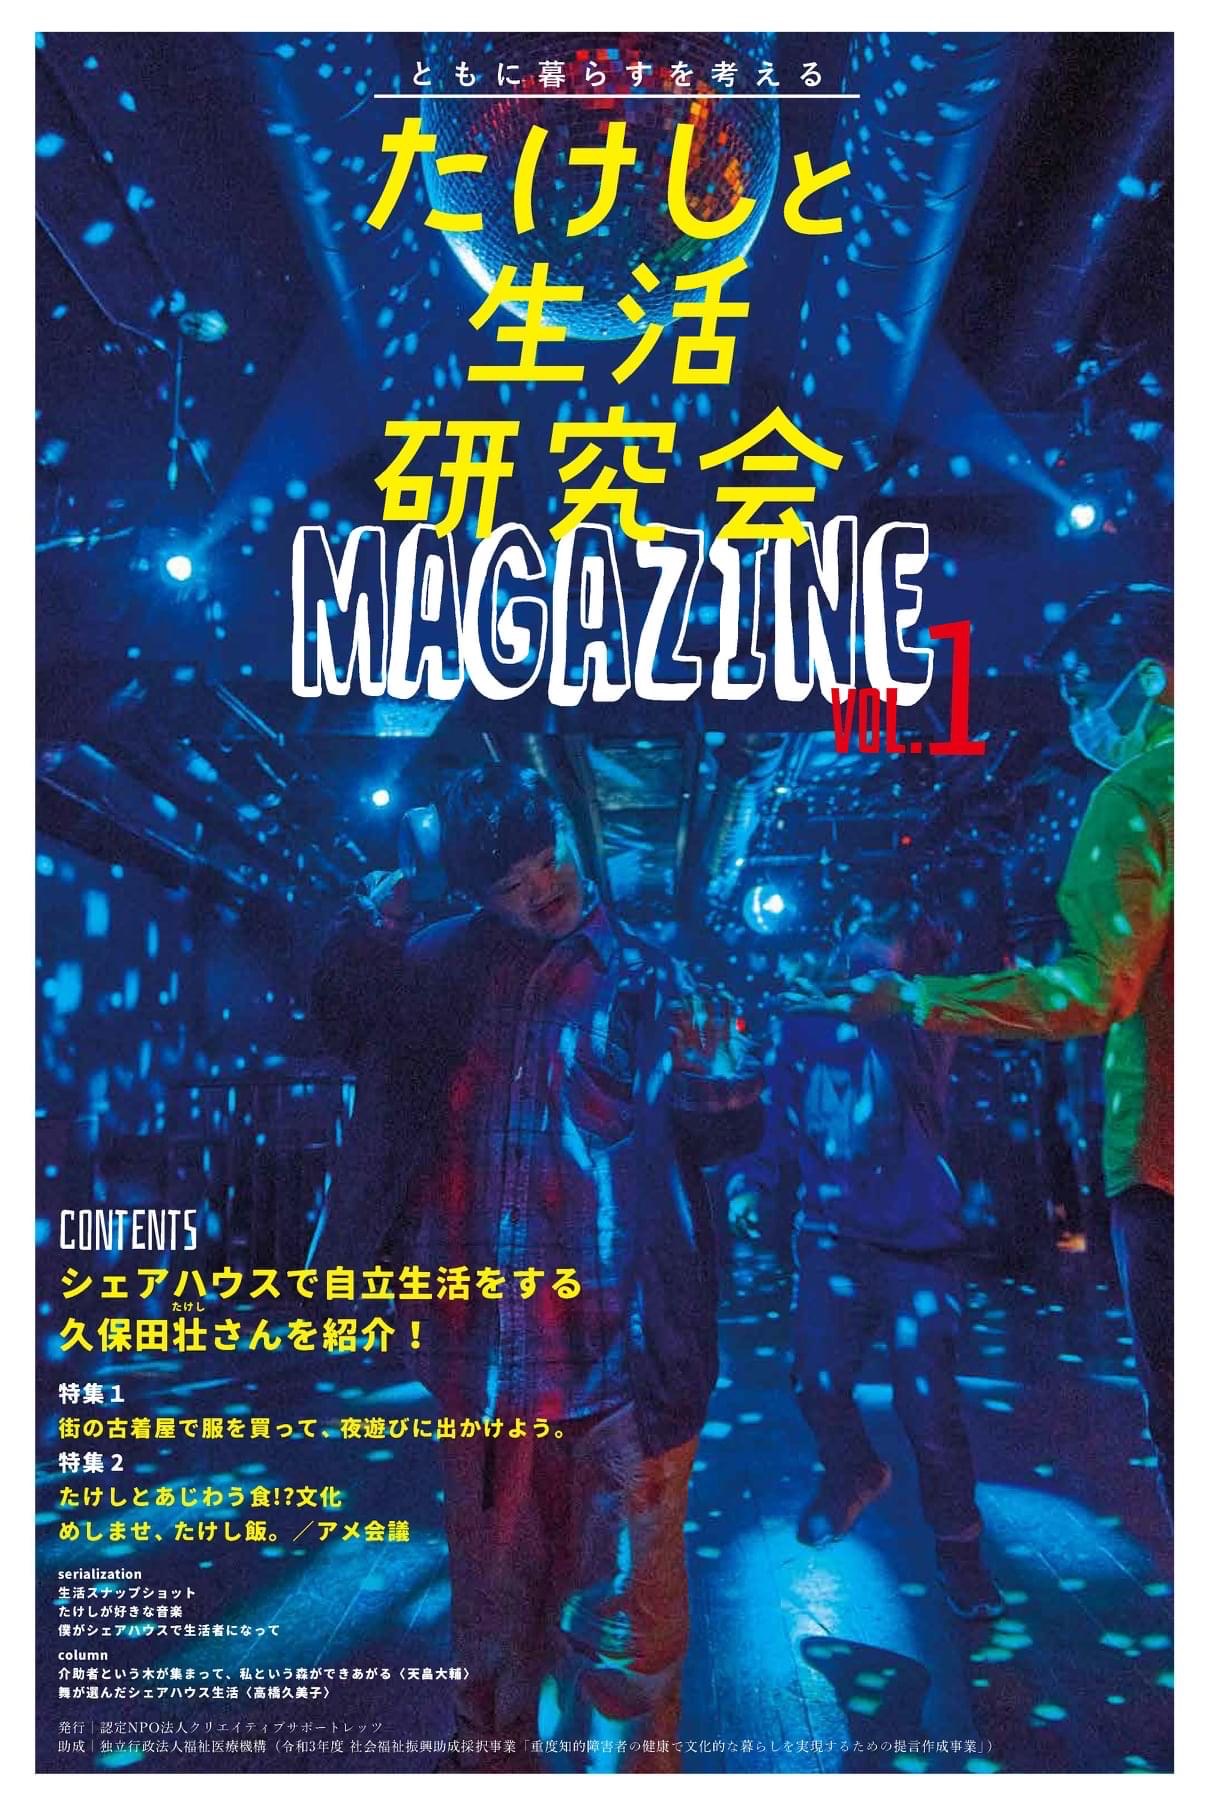 たけしと生活研究会MAGAZINE vol.1 発行